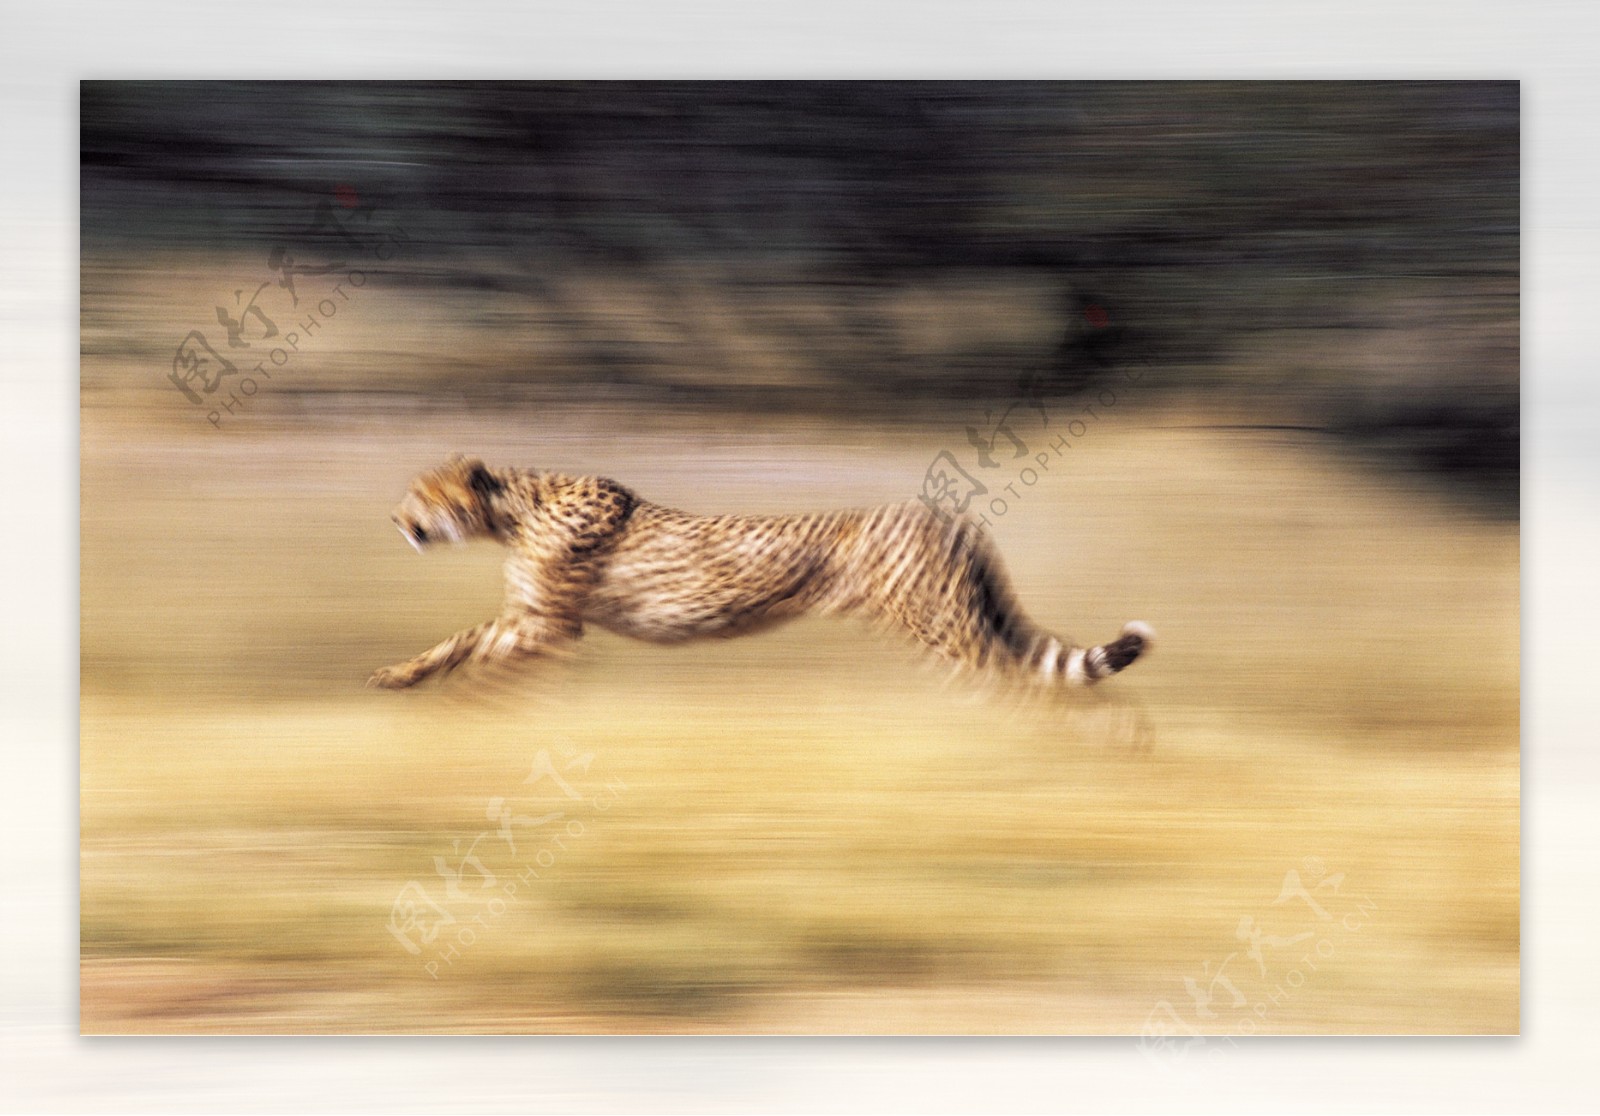 奔跑的猎豹